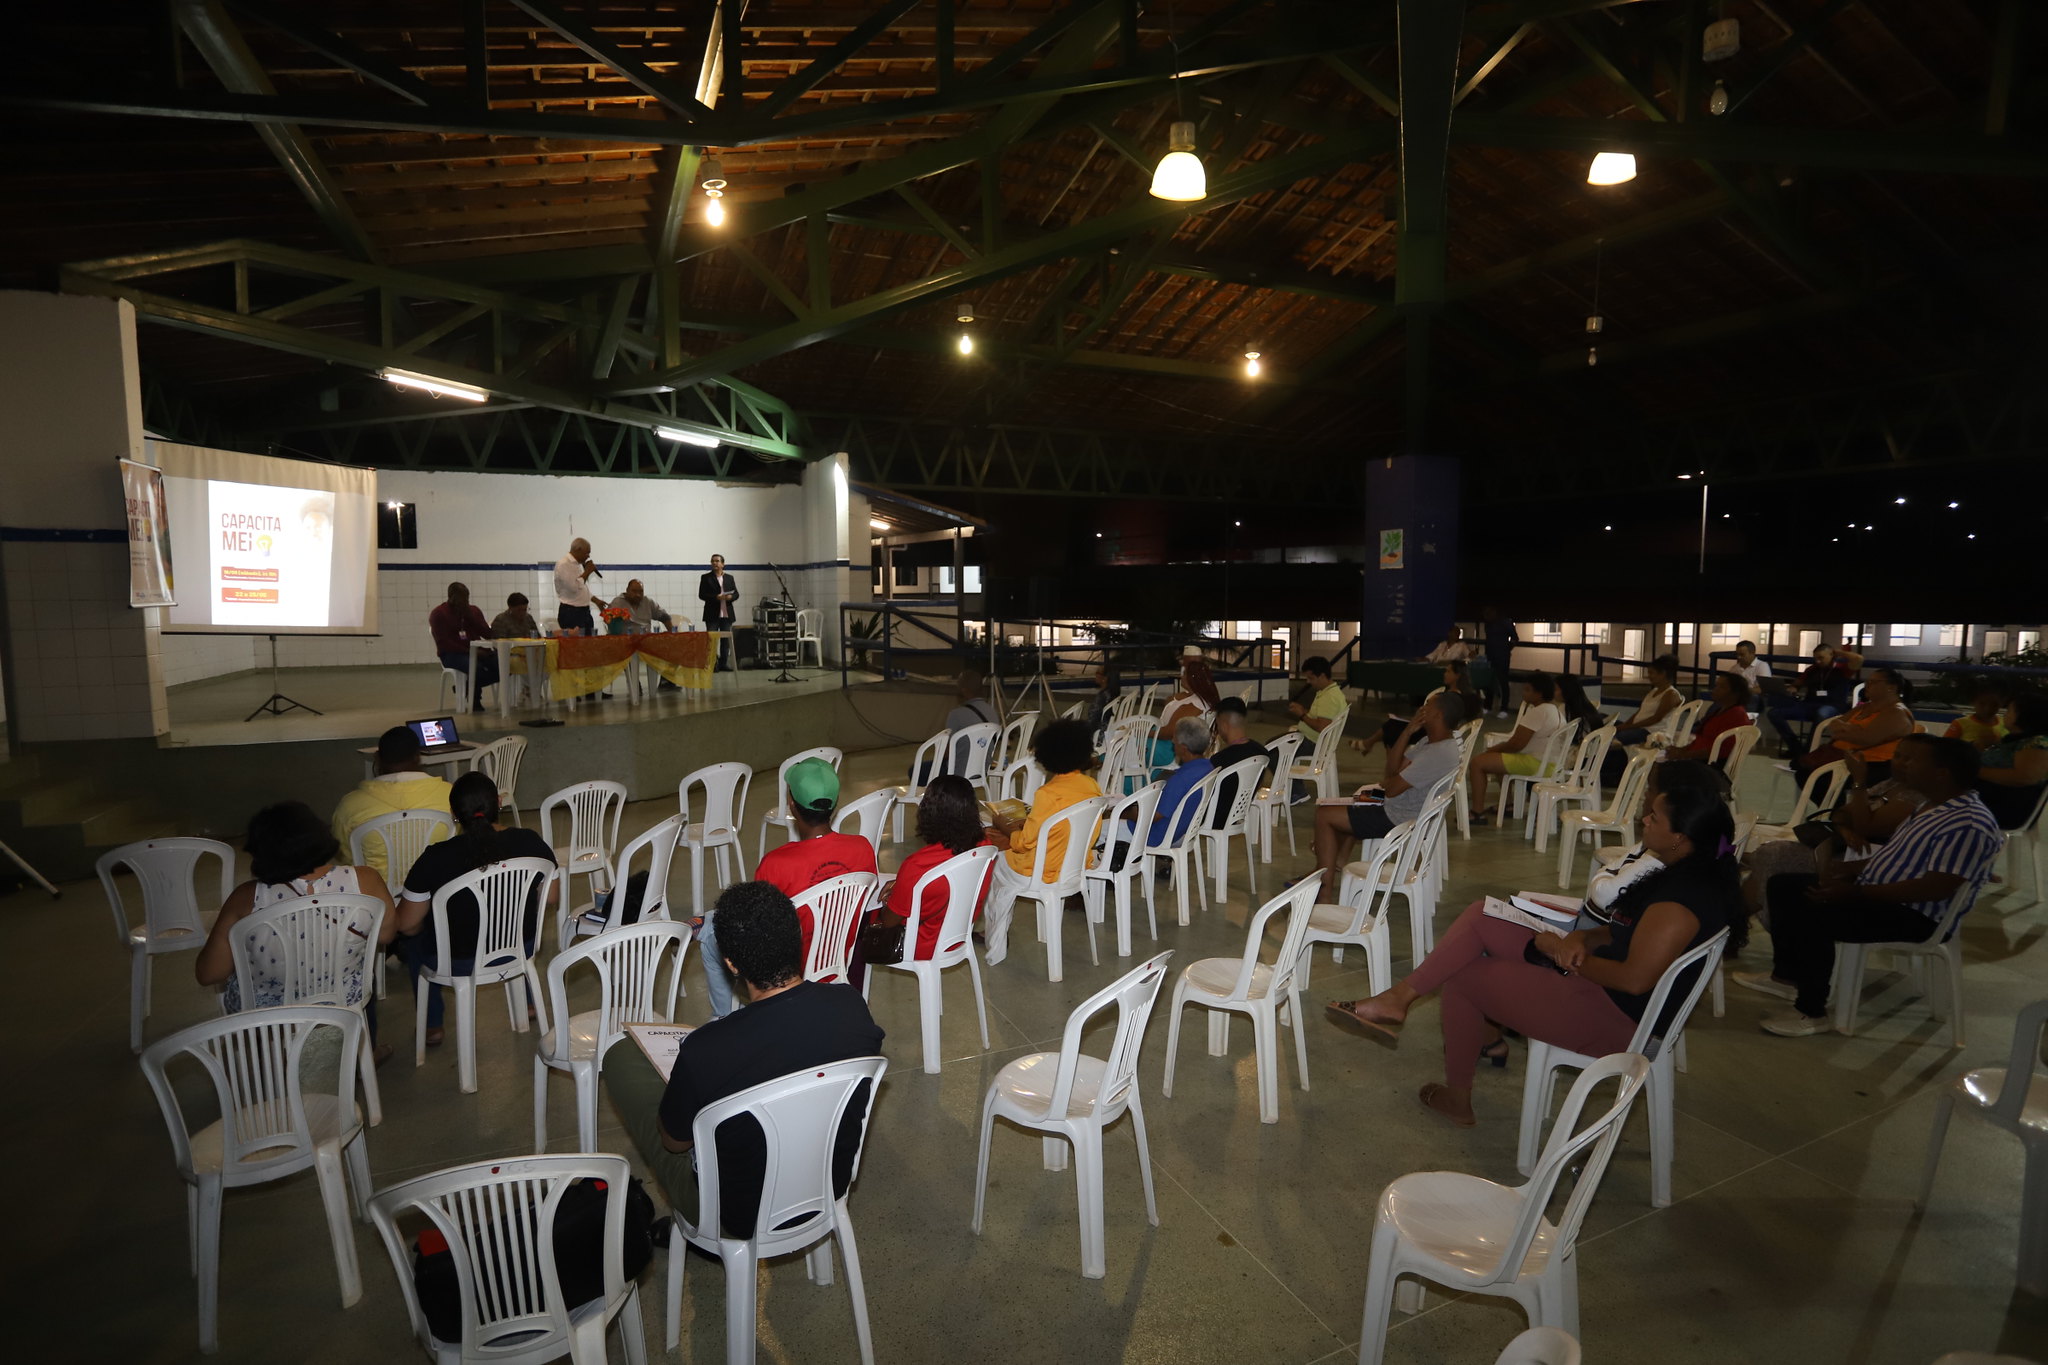 Capacita MEI direciona microempreendedores a gerenciar seu pr�prio neg�cio em Lauro de Freitas